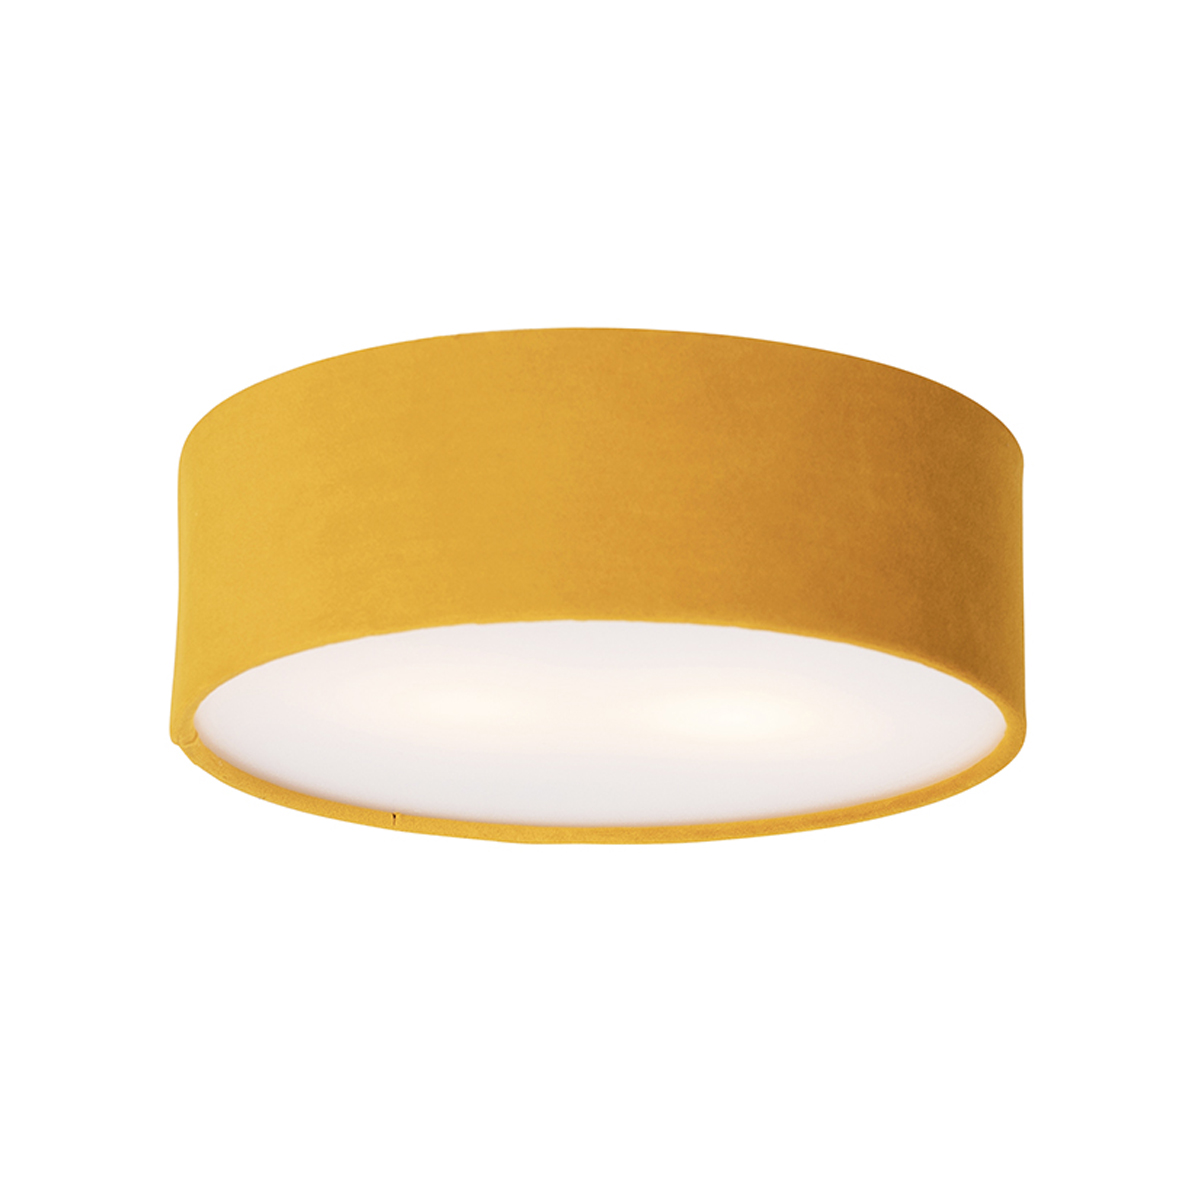 Ceiling lamp ocher 30 cm with golden inside - Drum